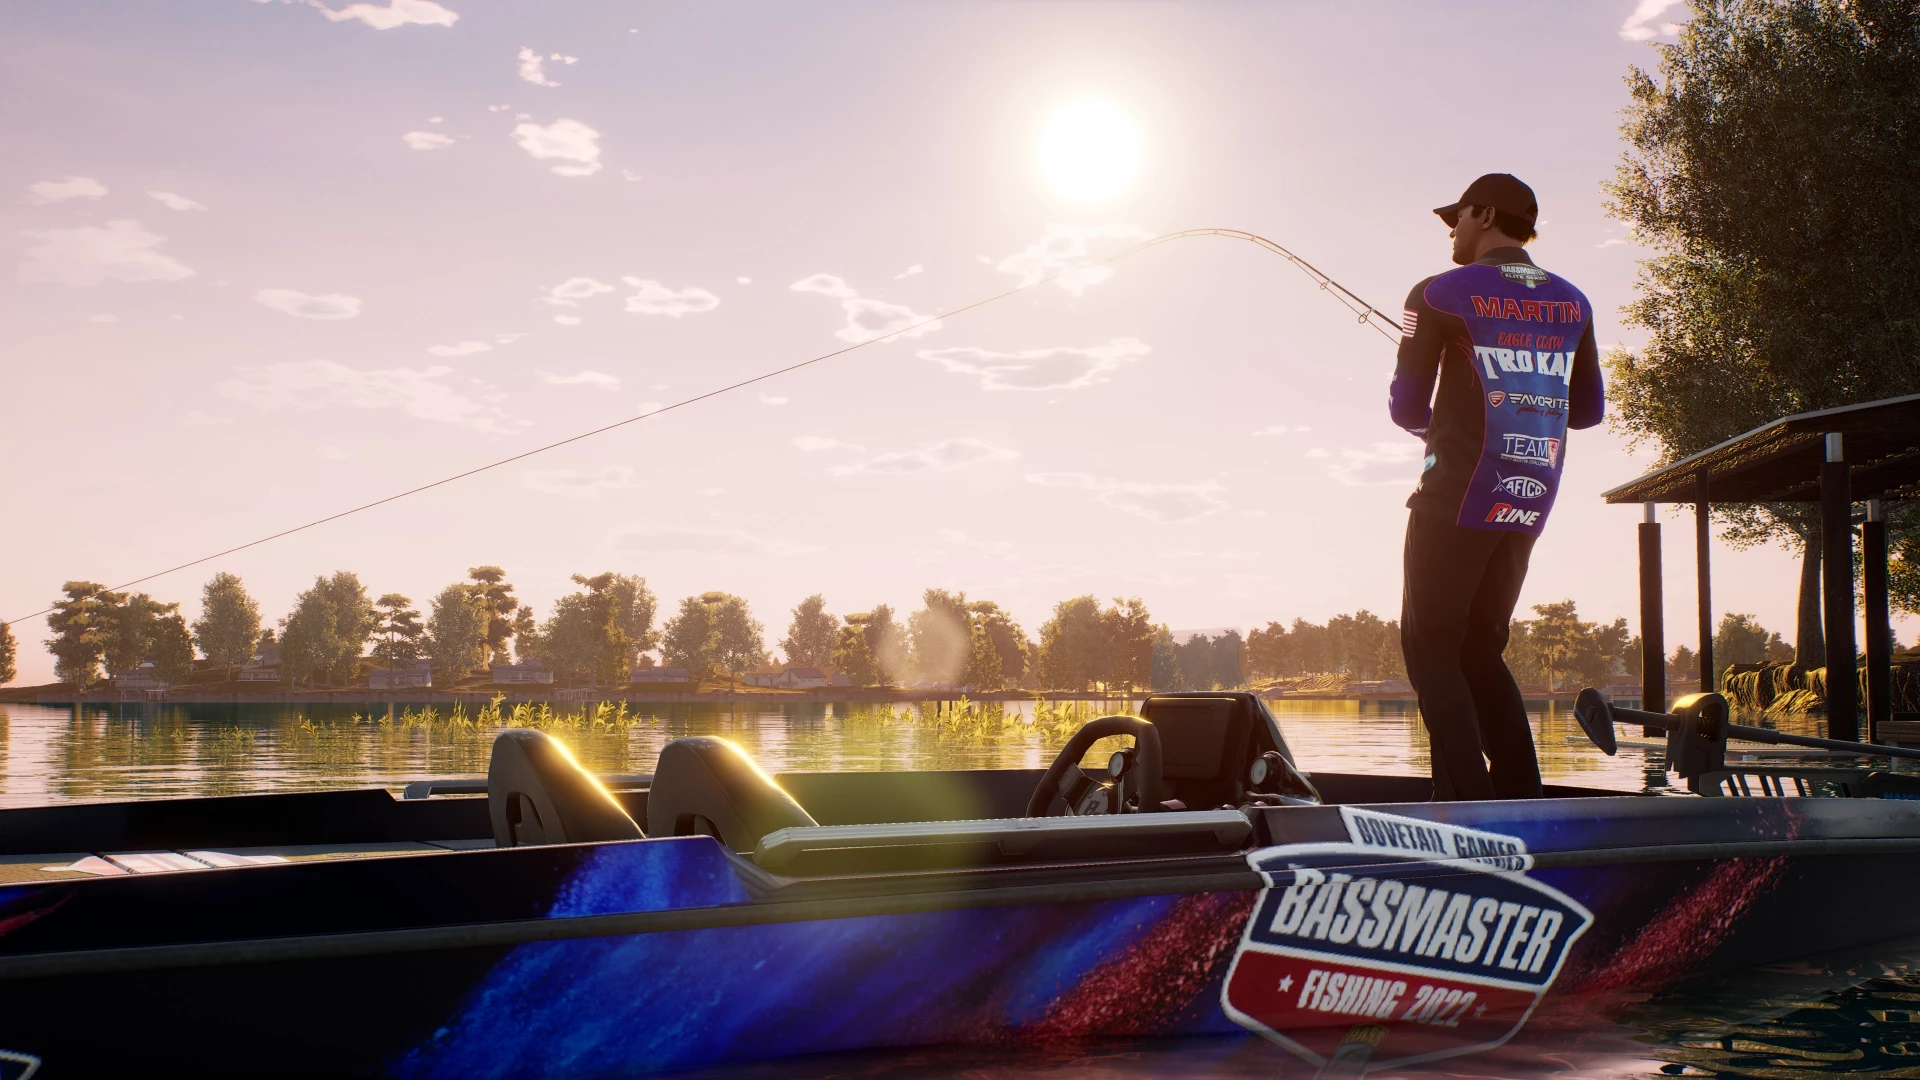 Bassmaster Fishing Deluxe 2022  voor de PlayStation 4 preorder plaatsen op nedgame.nl